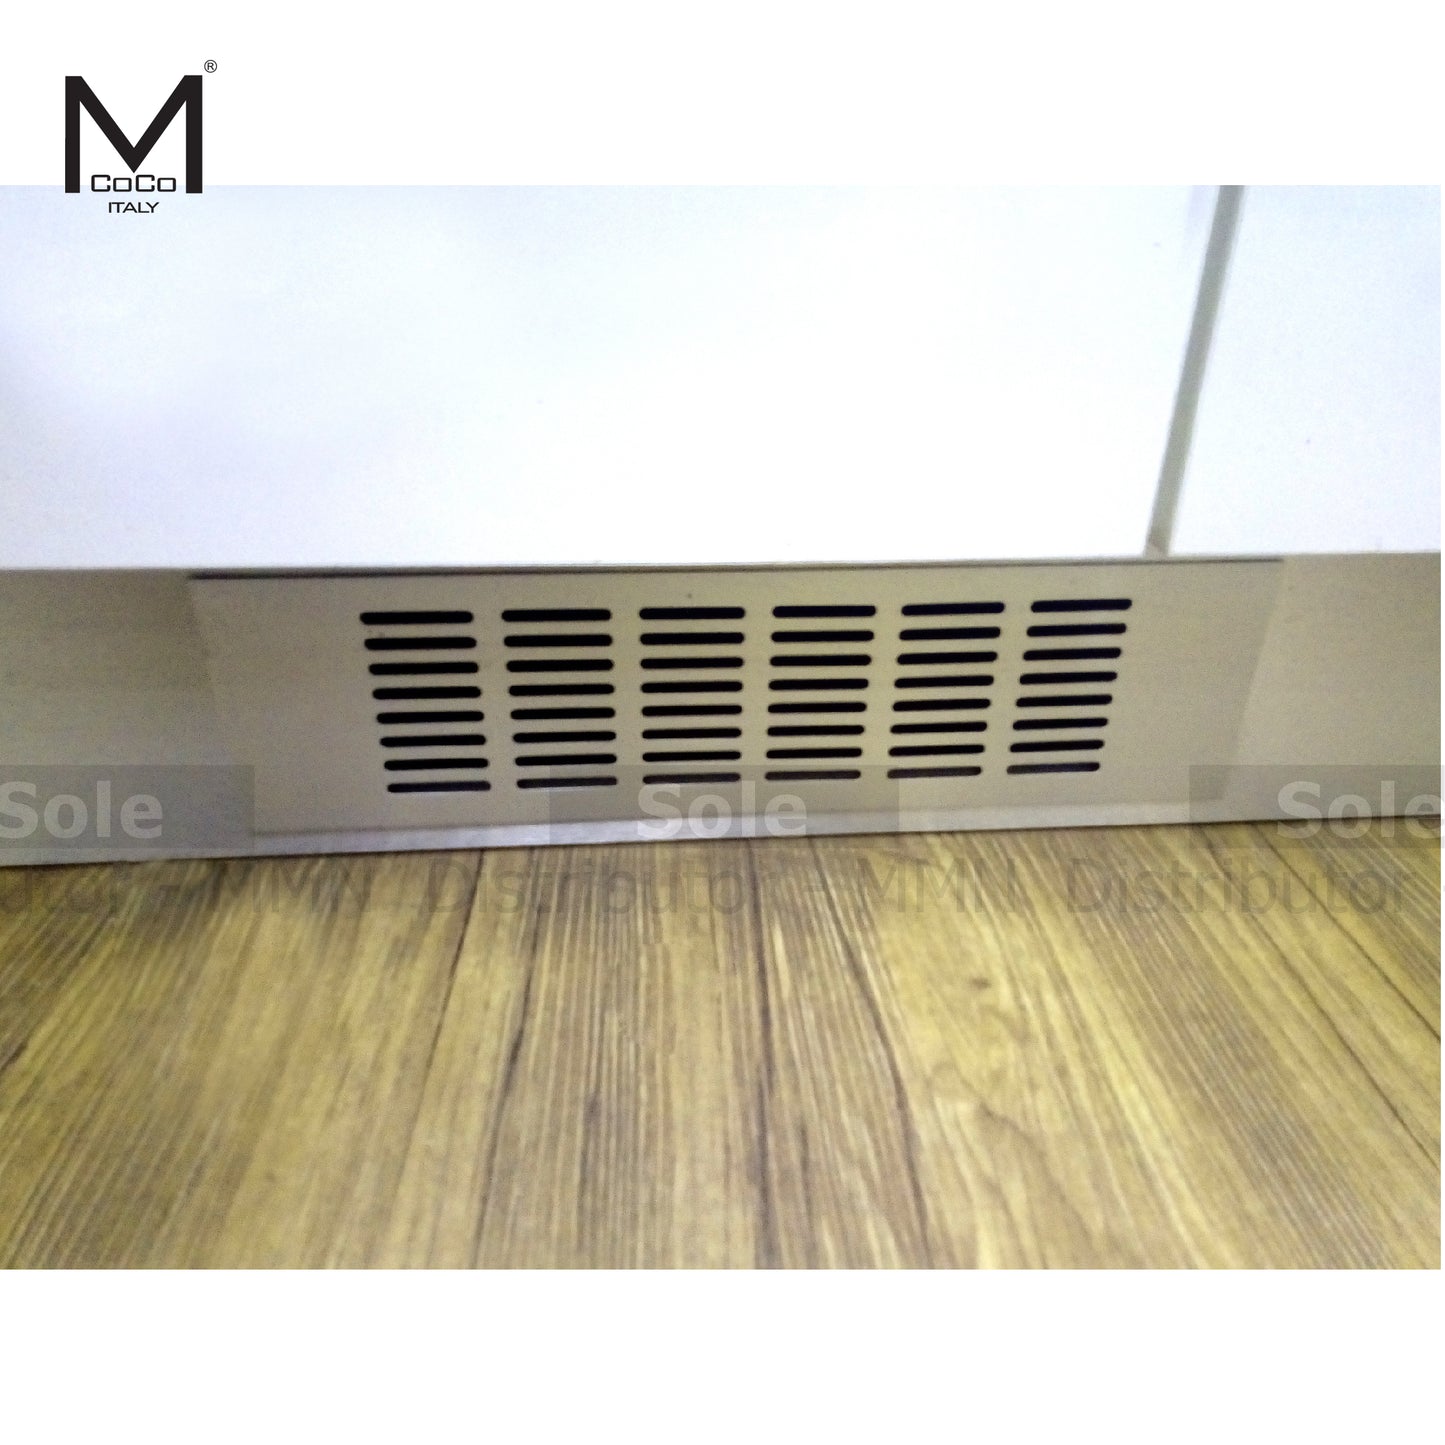 Mcoco Kitchen Ventilation Louvers Size 12x3" Rectangle Shape - 24.05.30603